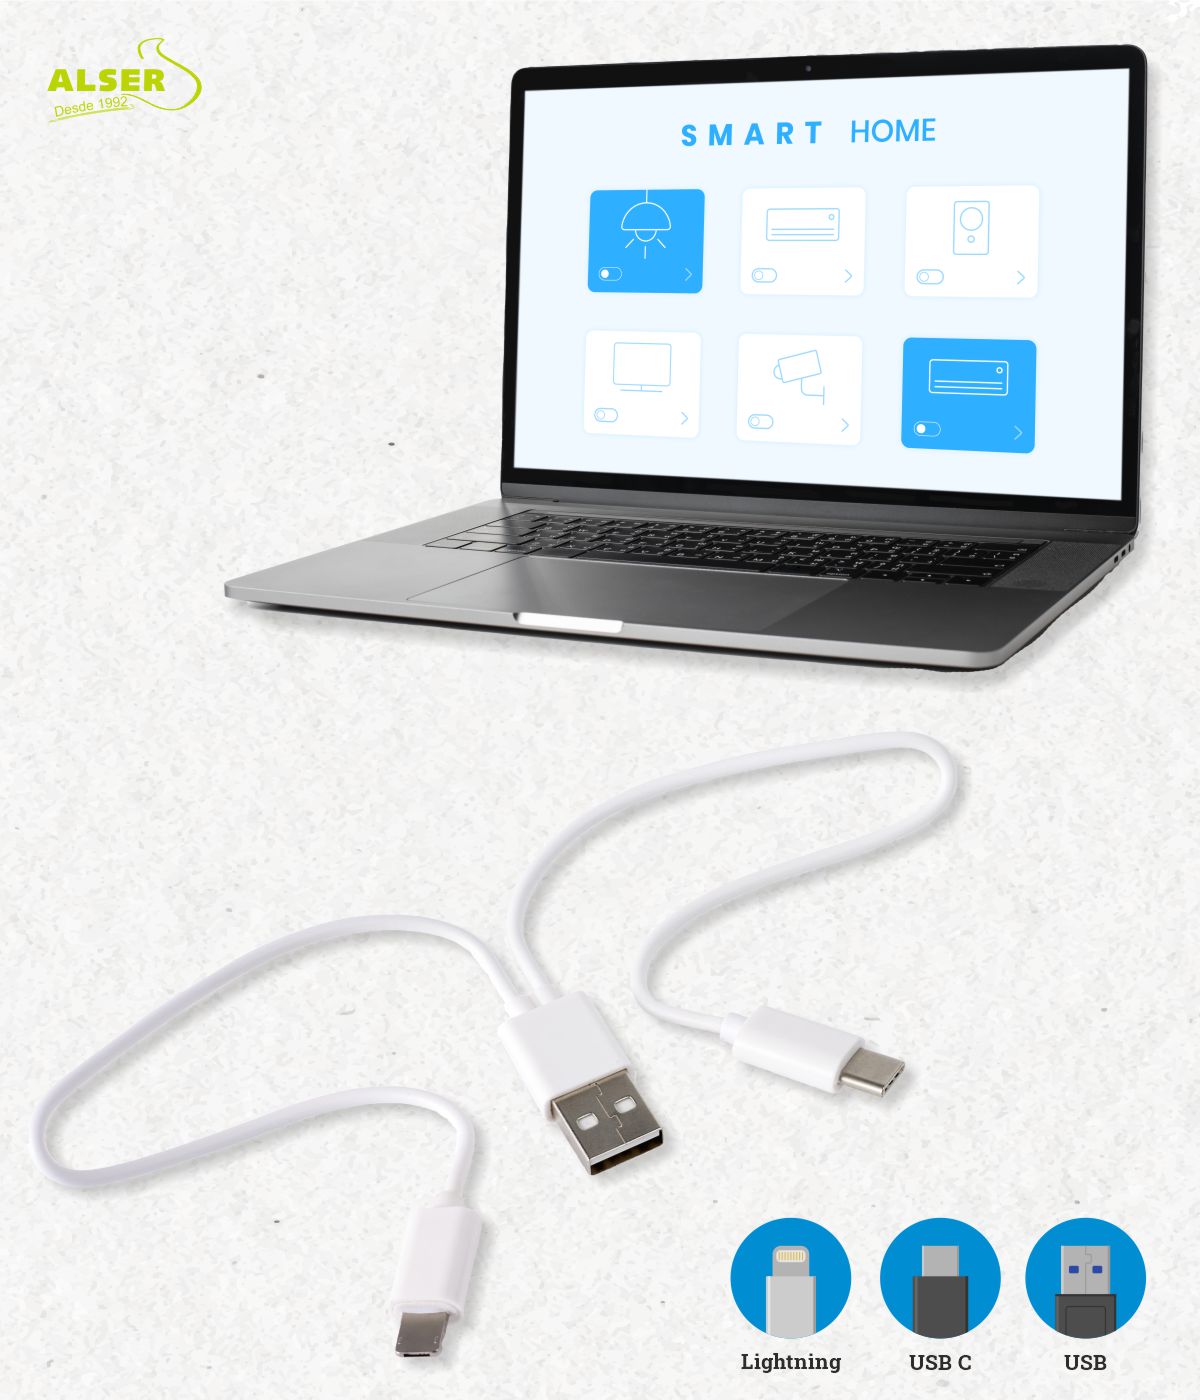 Conector USB Multicargador Retractil - EASY POWER  artículos publicitarios  - regalos corporativos - merchandising